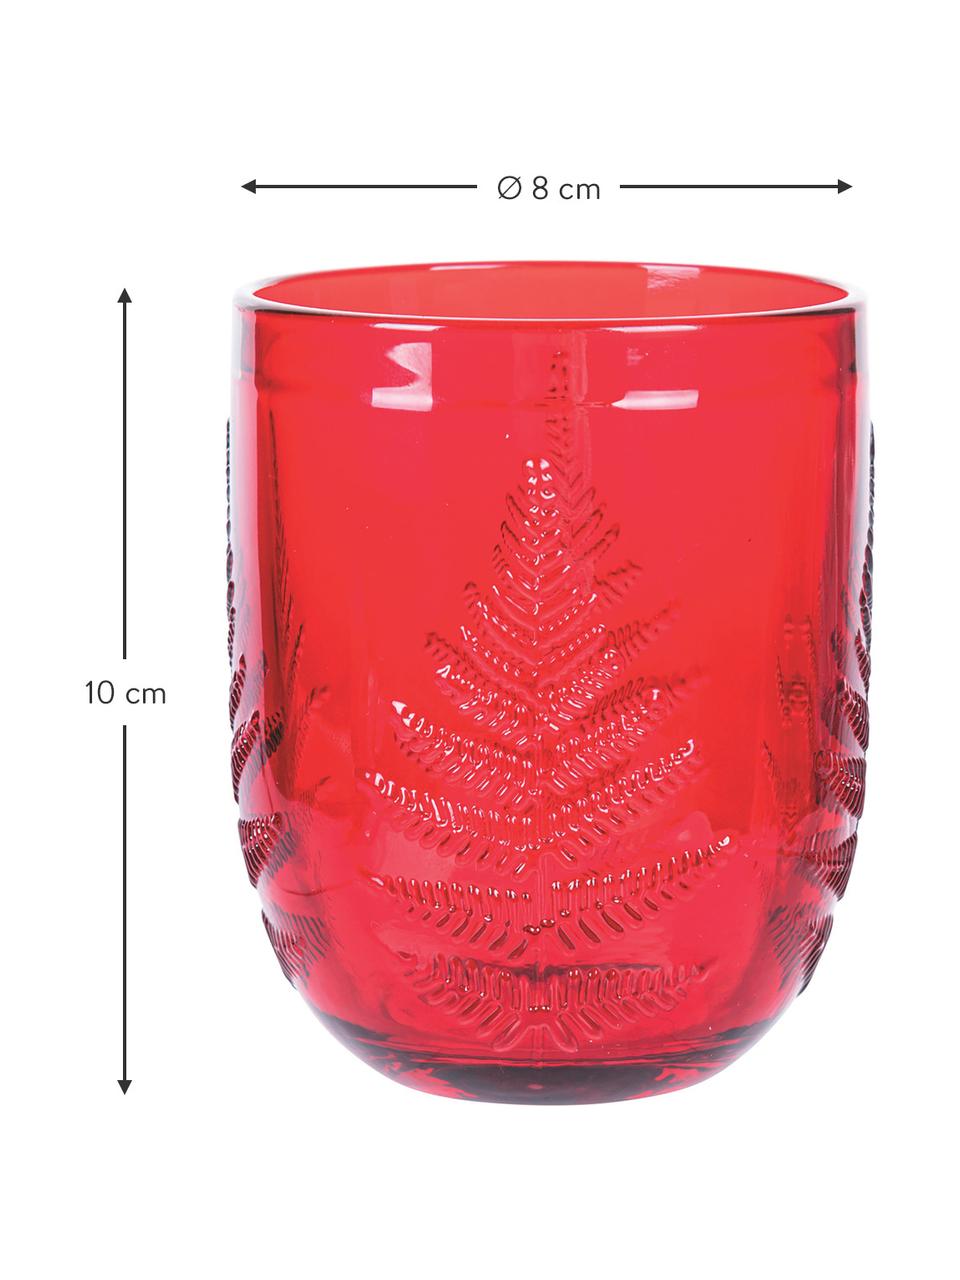 Wijnglazen Aspen in rood met kerst getextureerde structuurpatroon, 6 stuks, Glas, Rood, Ø 8 x H 10 cm, 250 ml